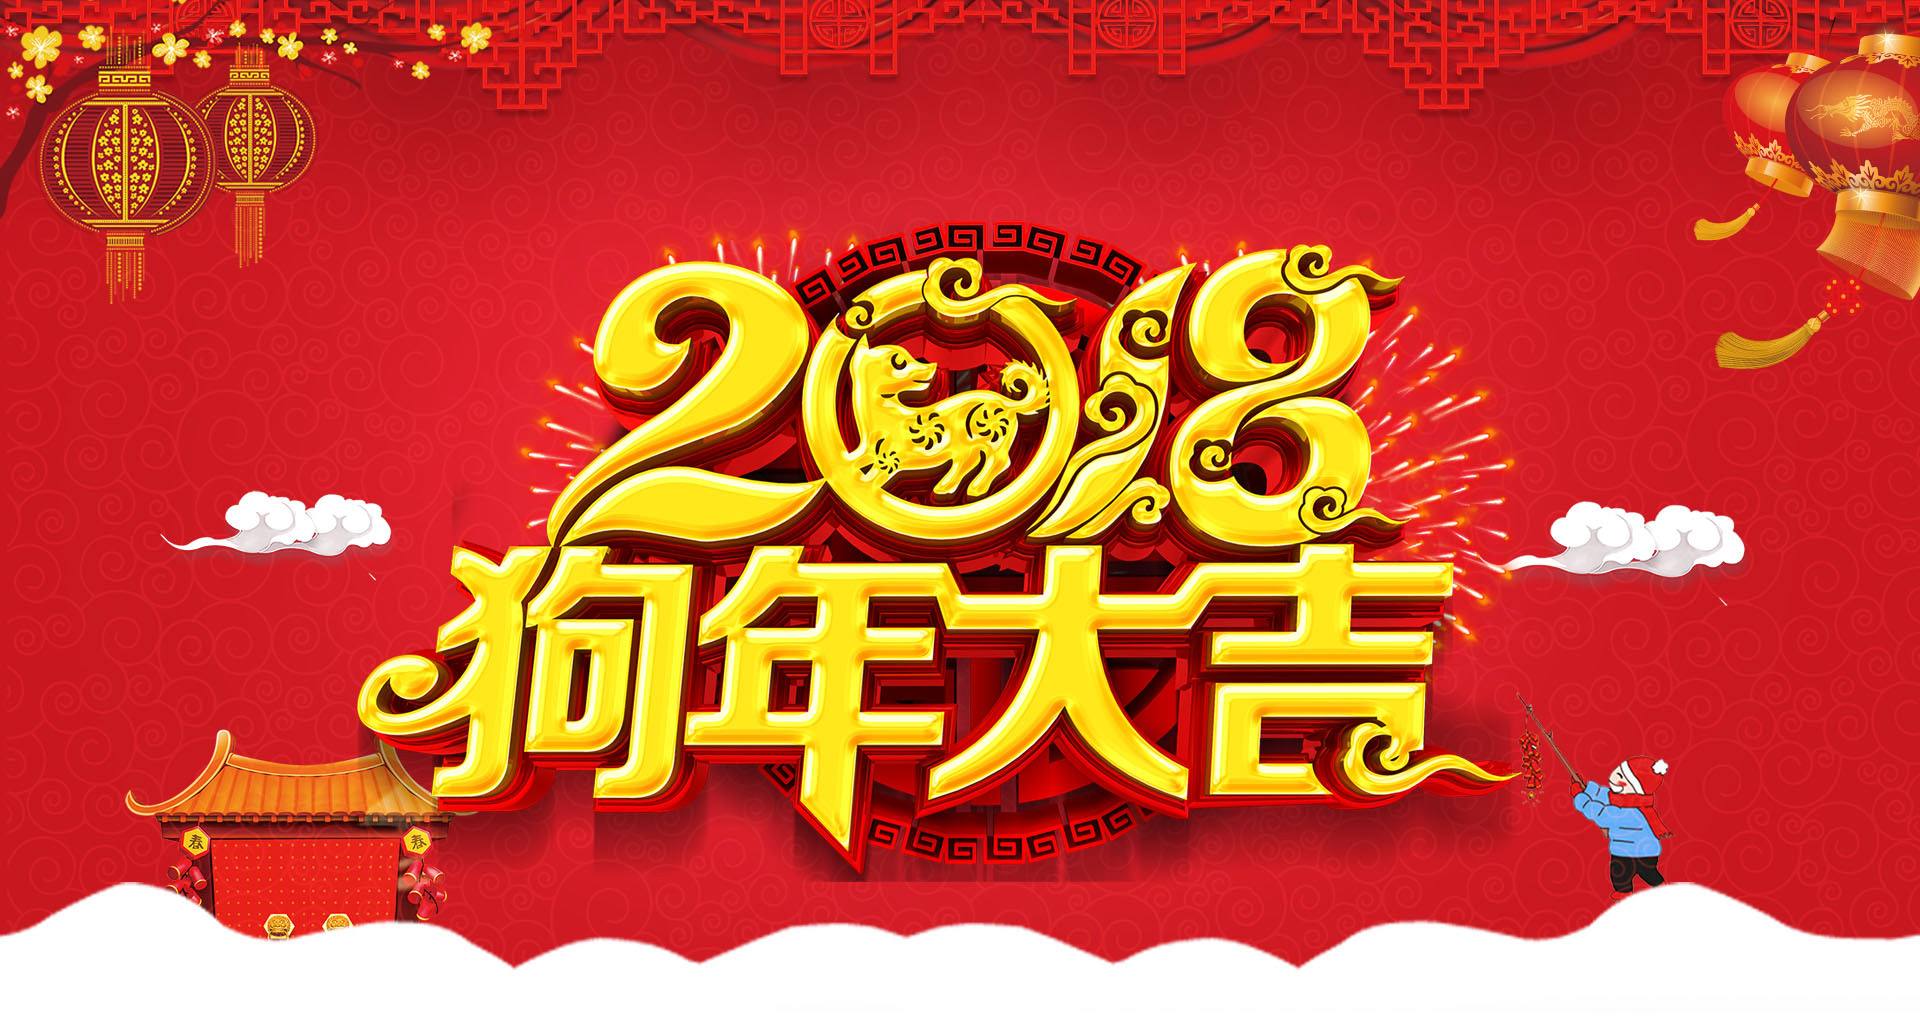 中国形象设计协会领导携全体工作人员给您拜年